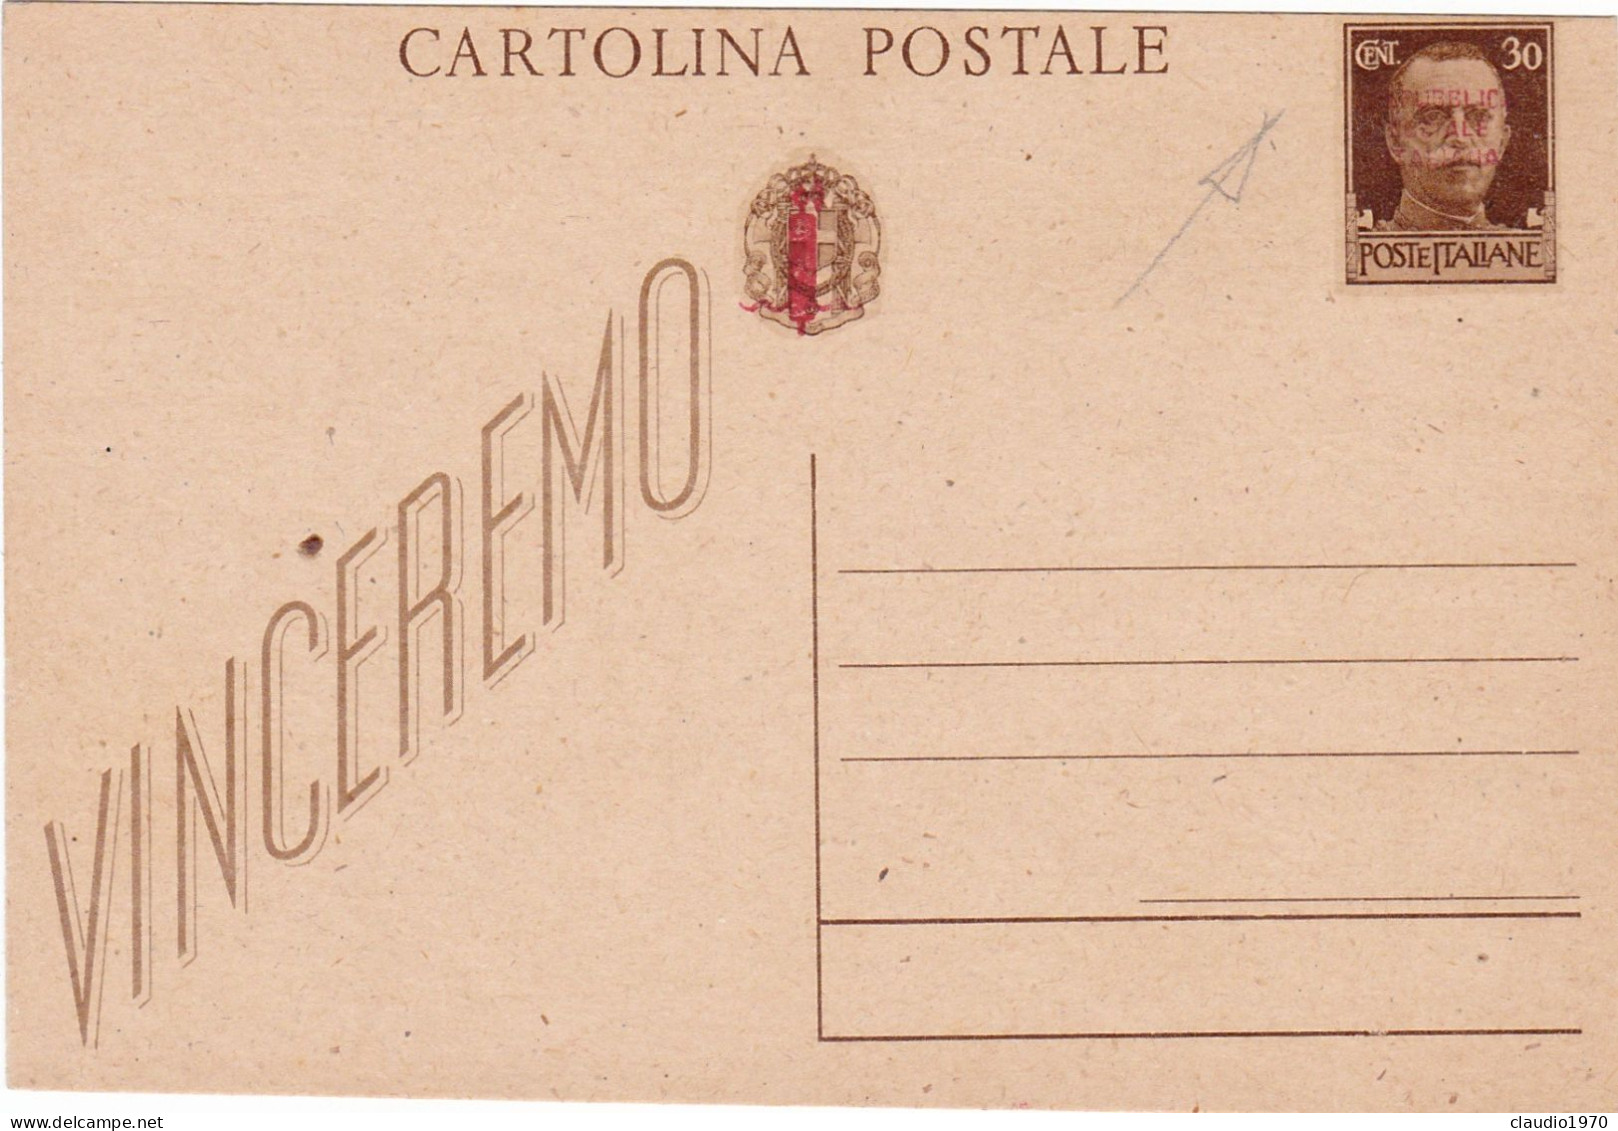 REPUBBLICA SOCIALE ITALIANA - RSI - INTERO POSTALE C.30 - VINCEREMO - FASCETTO  - CARTOLINA POSTALE -NUOVA - Interi Postali